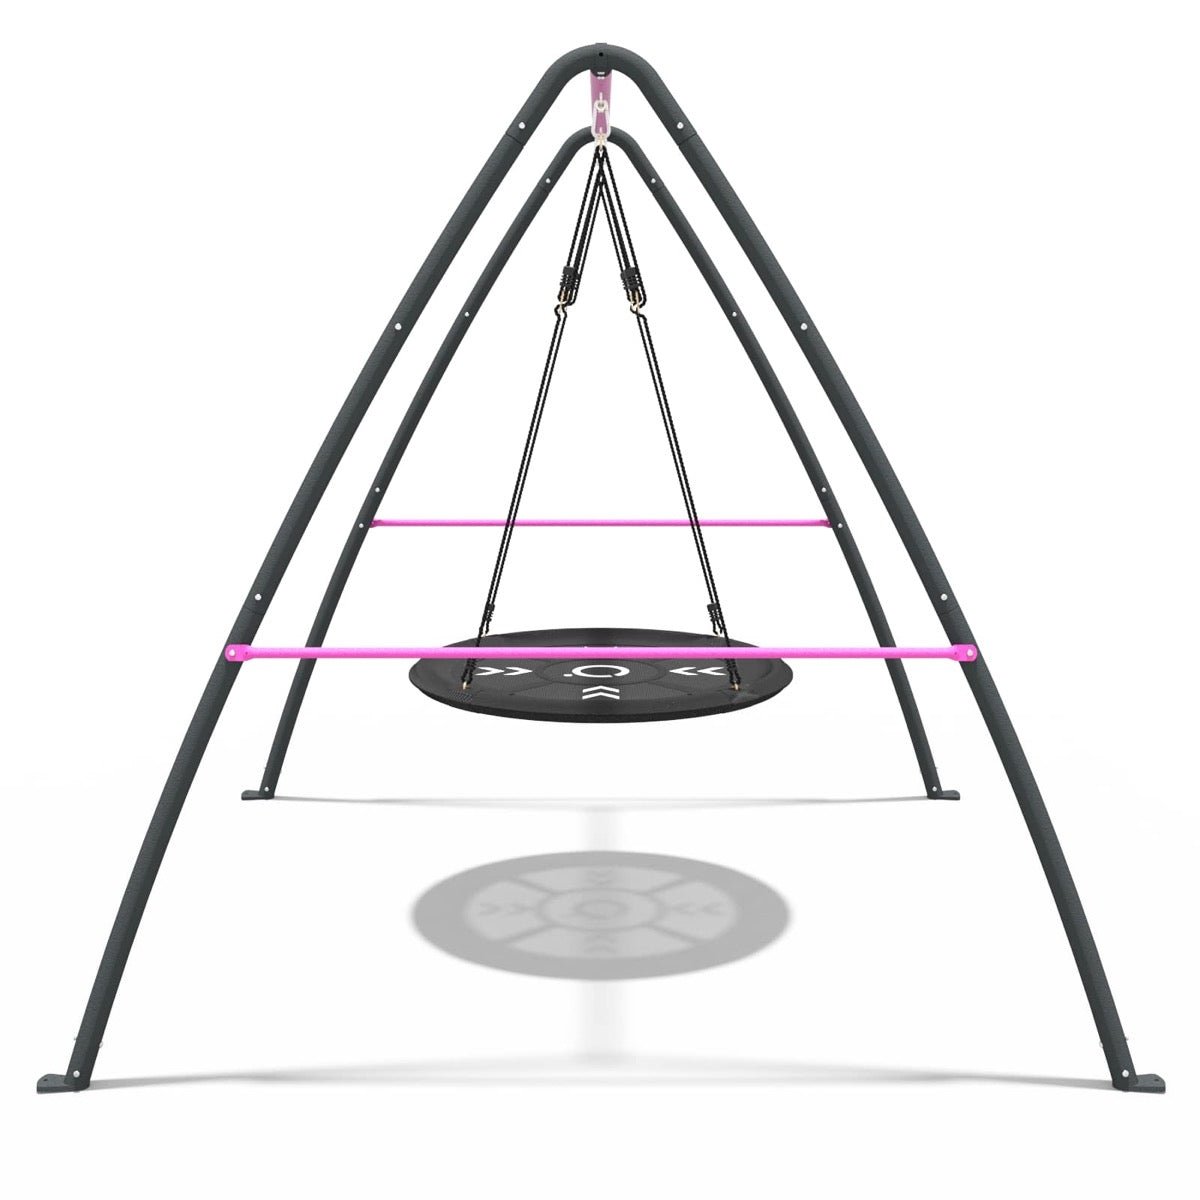 Rebo Steel Series Metal Swing Set - Nest Swing Pink